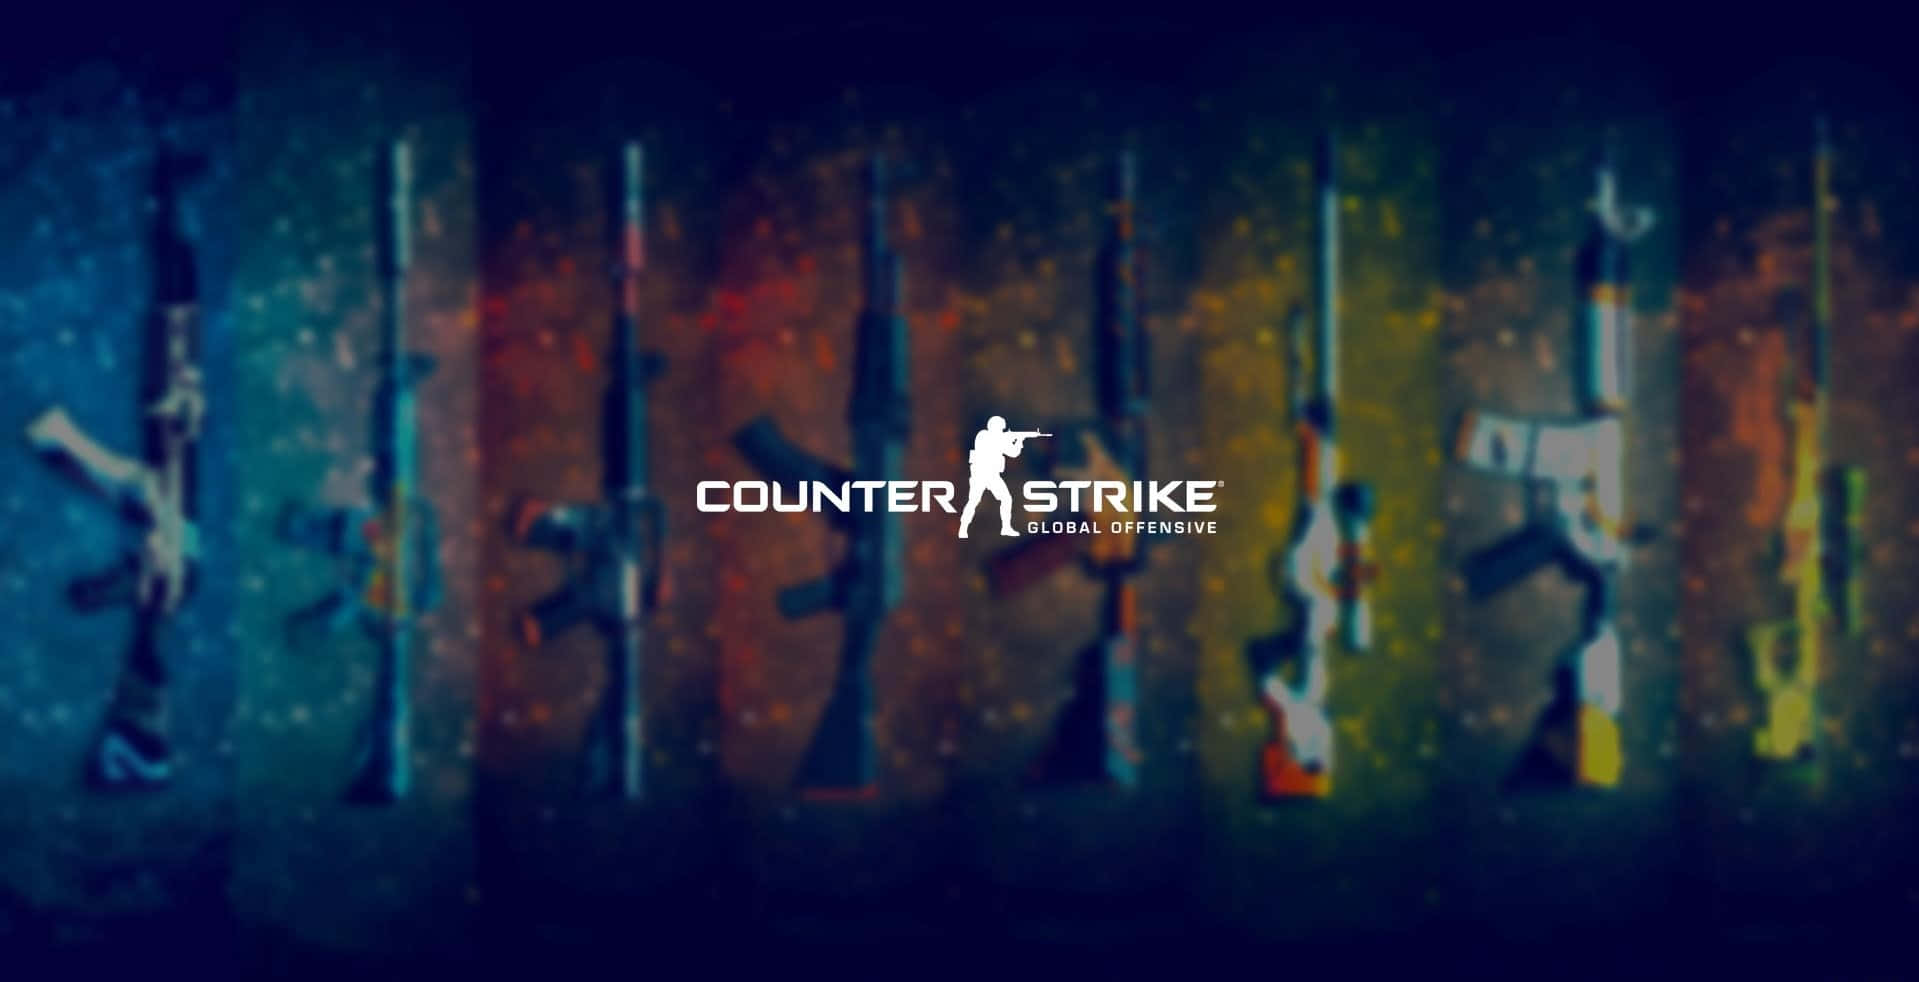 Zielensie Mit Counter-strike: Global Offensive